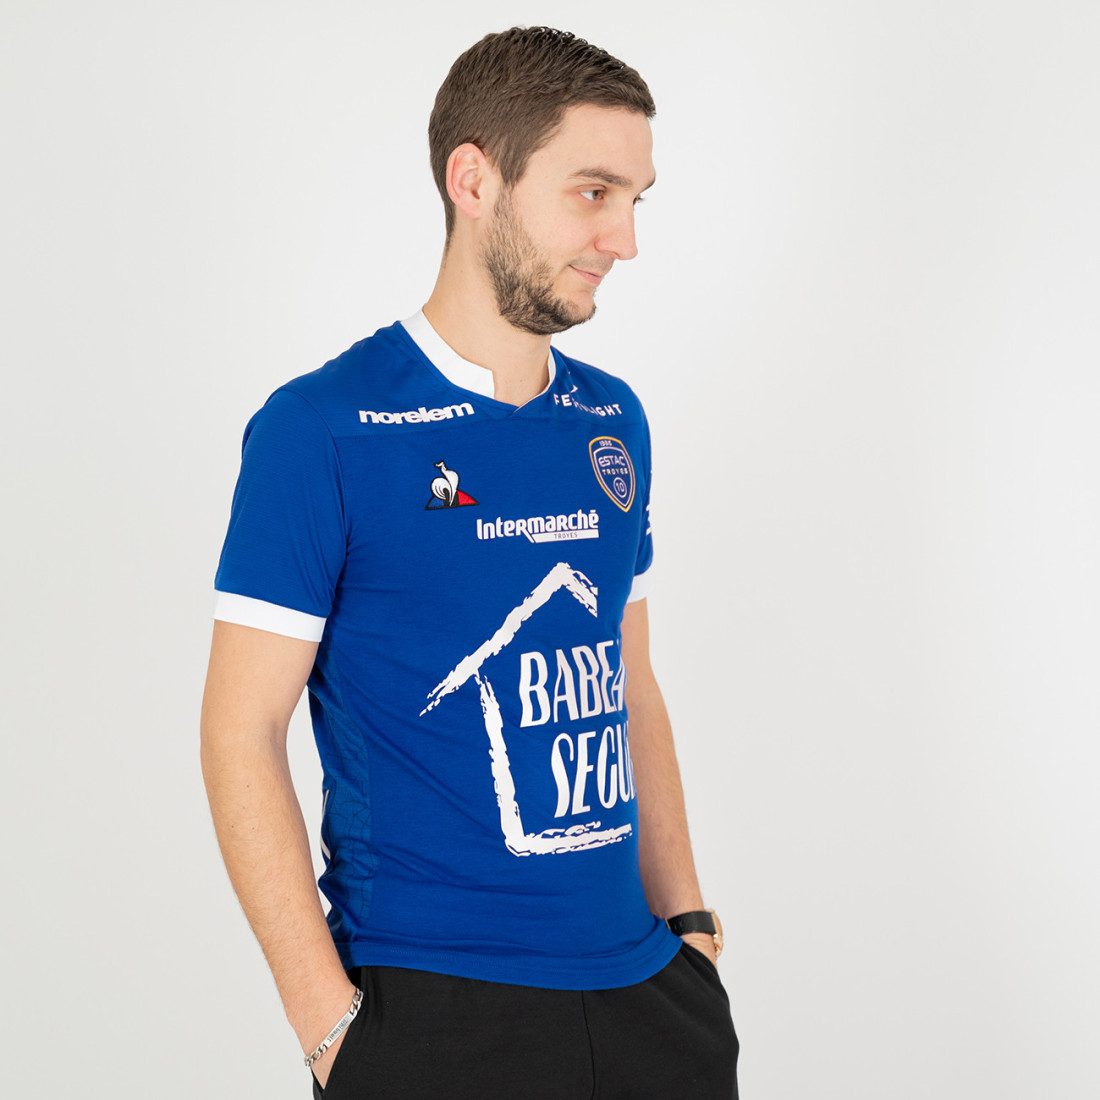 Veste de sport homme bleu – Collection Sports – Poitiers